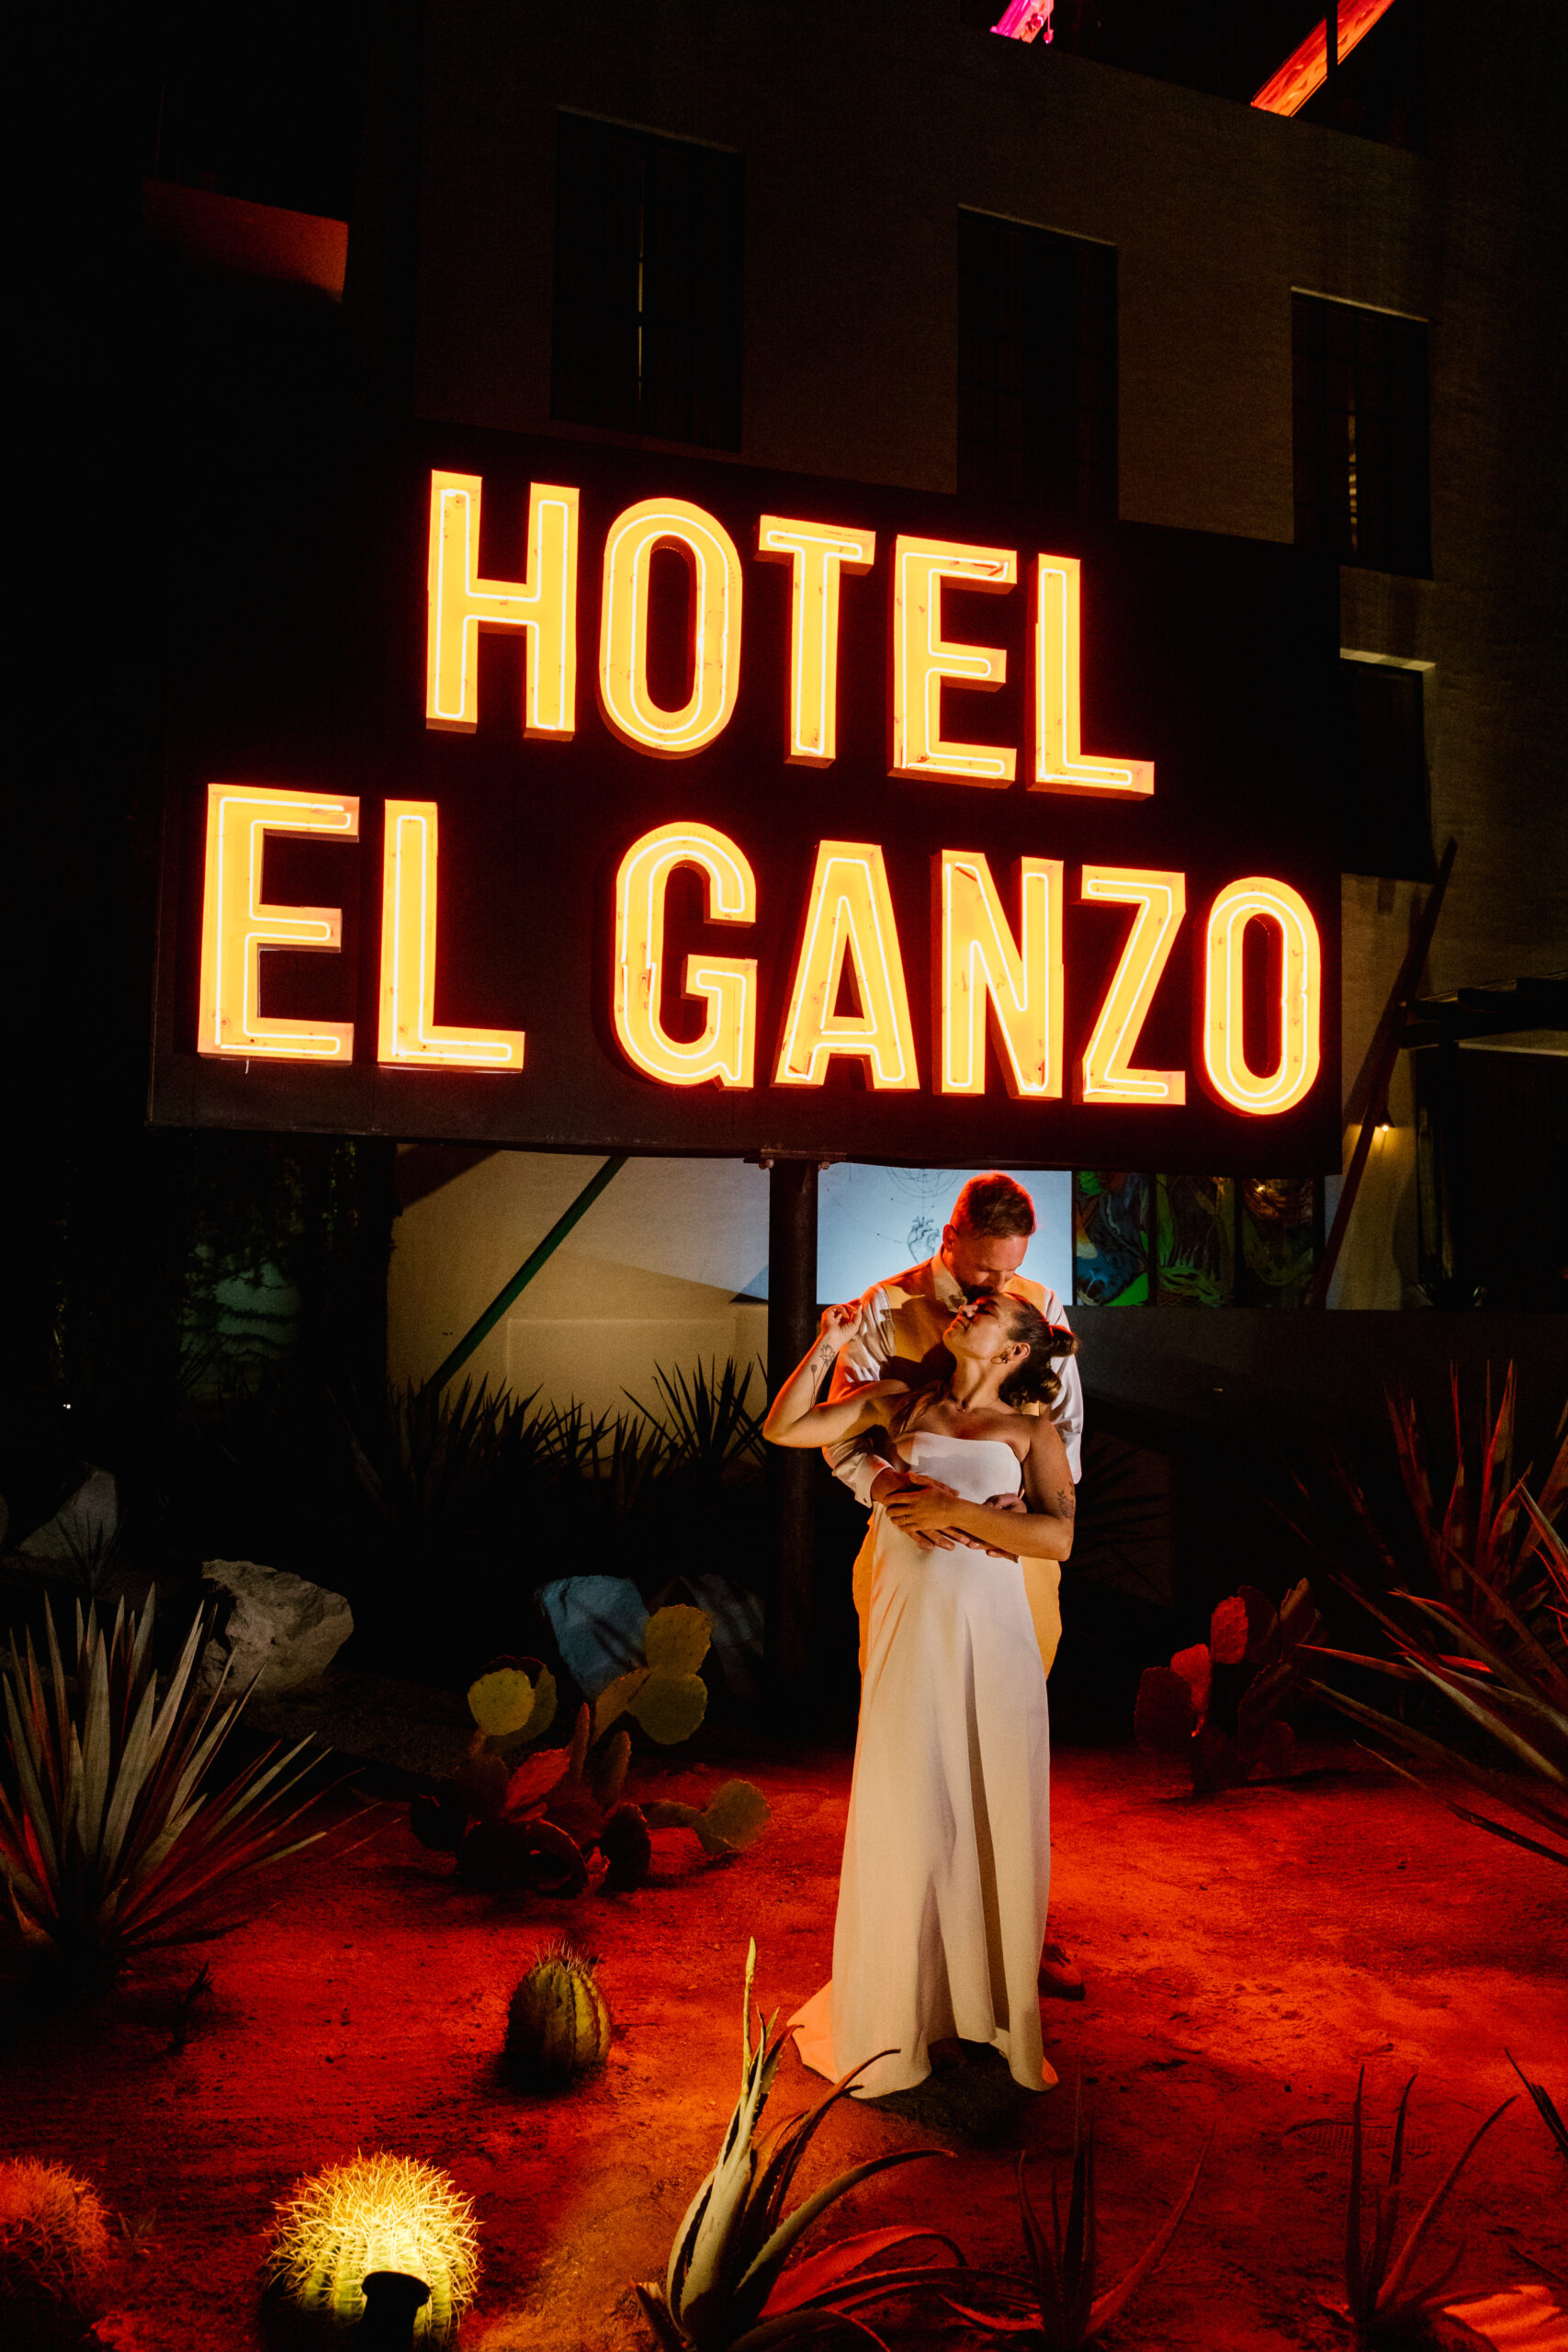 hotel el ganzo neon sign late night bride and groom portrait destination mexico wedding